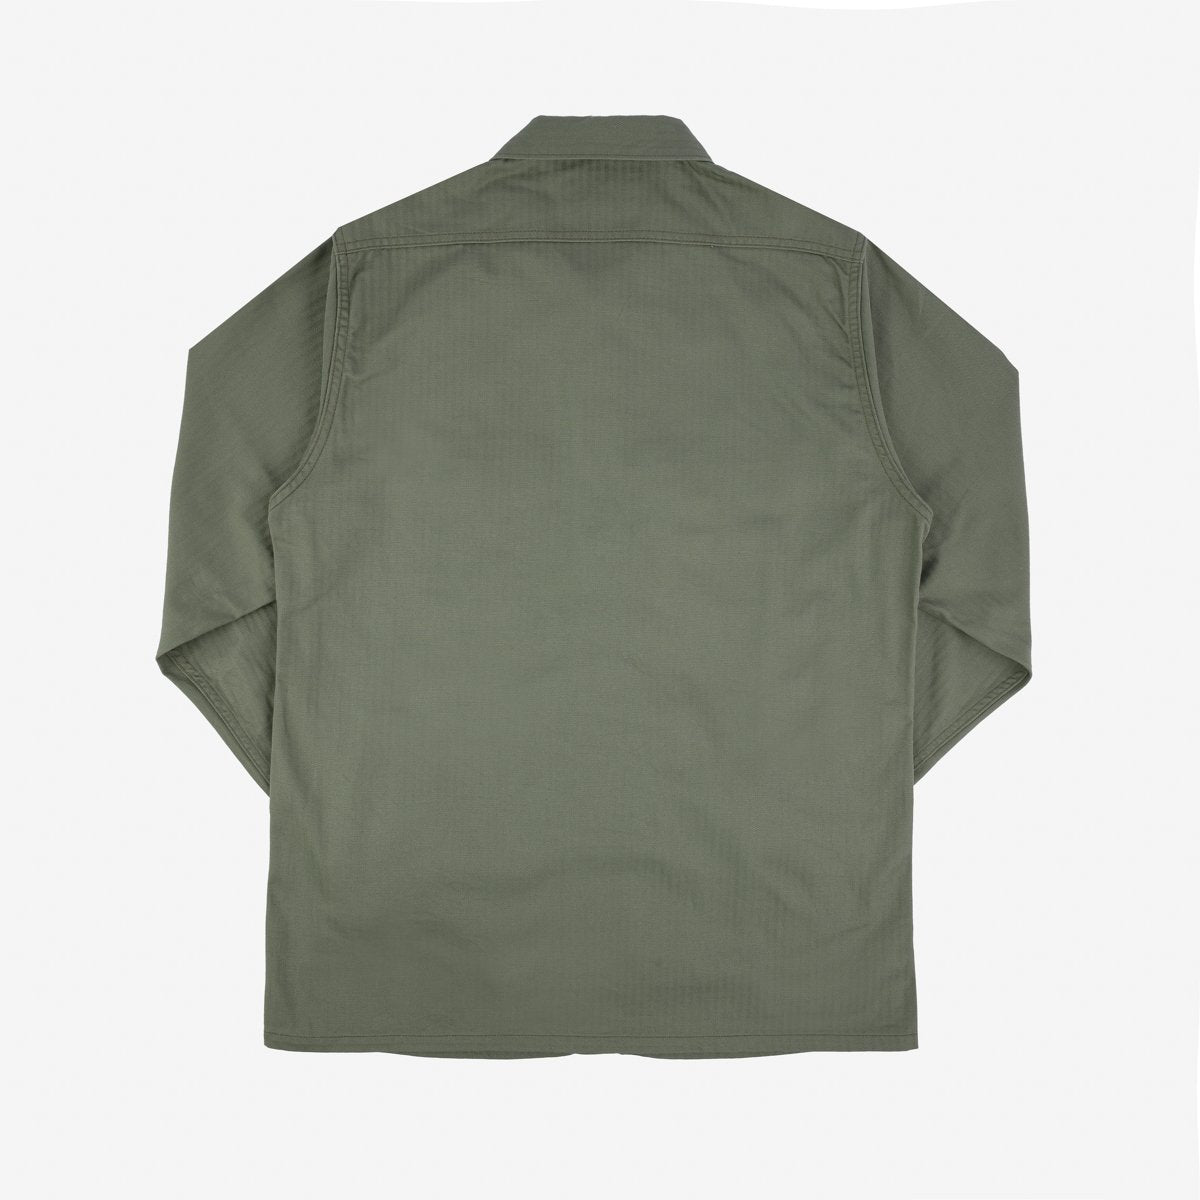 IHSH-380-ODG 9oz Herringbone Military Shirt Olive Drab Green